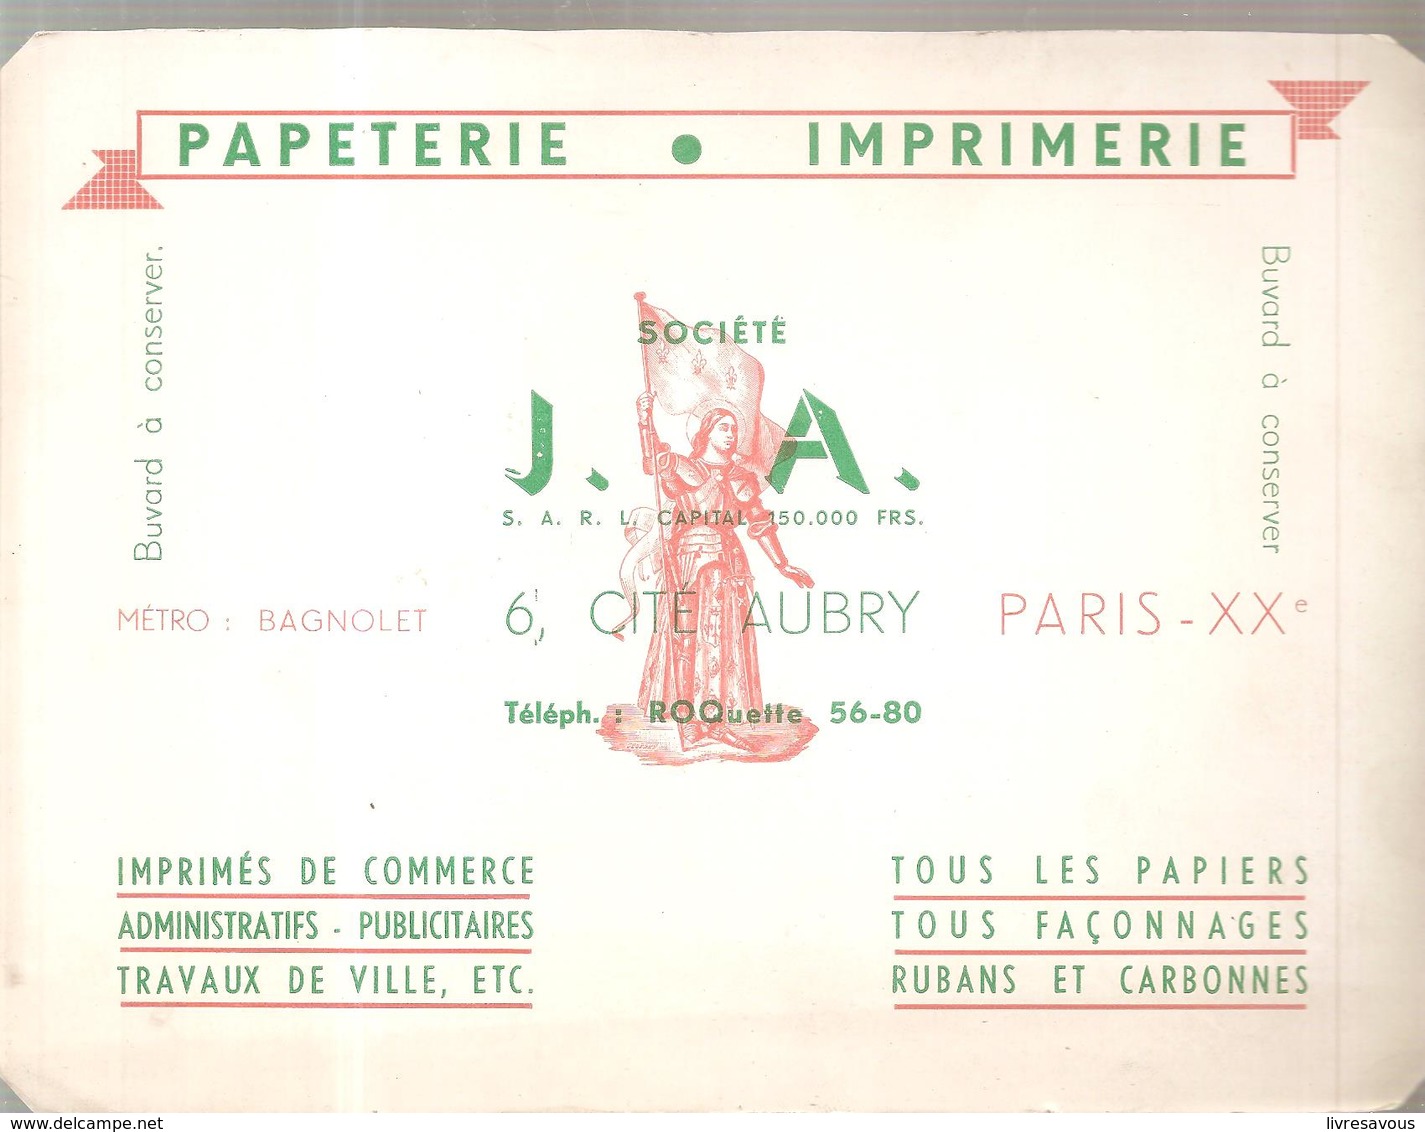 Buvard Papeterie Imprimerie Société J.A. 6, Cité Aubry Paris XX ème - Papeterie